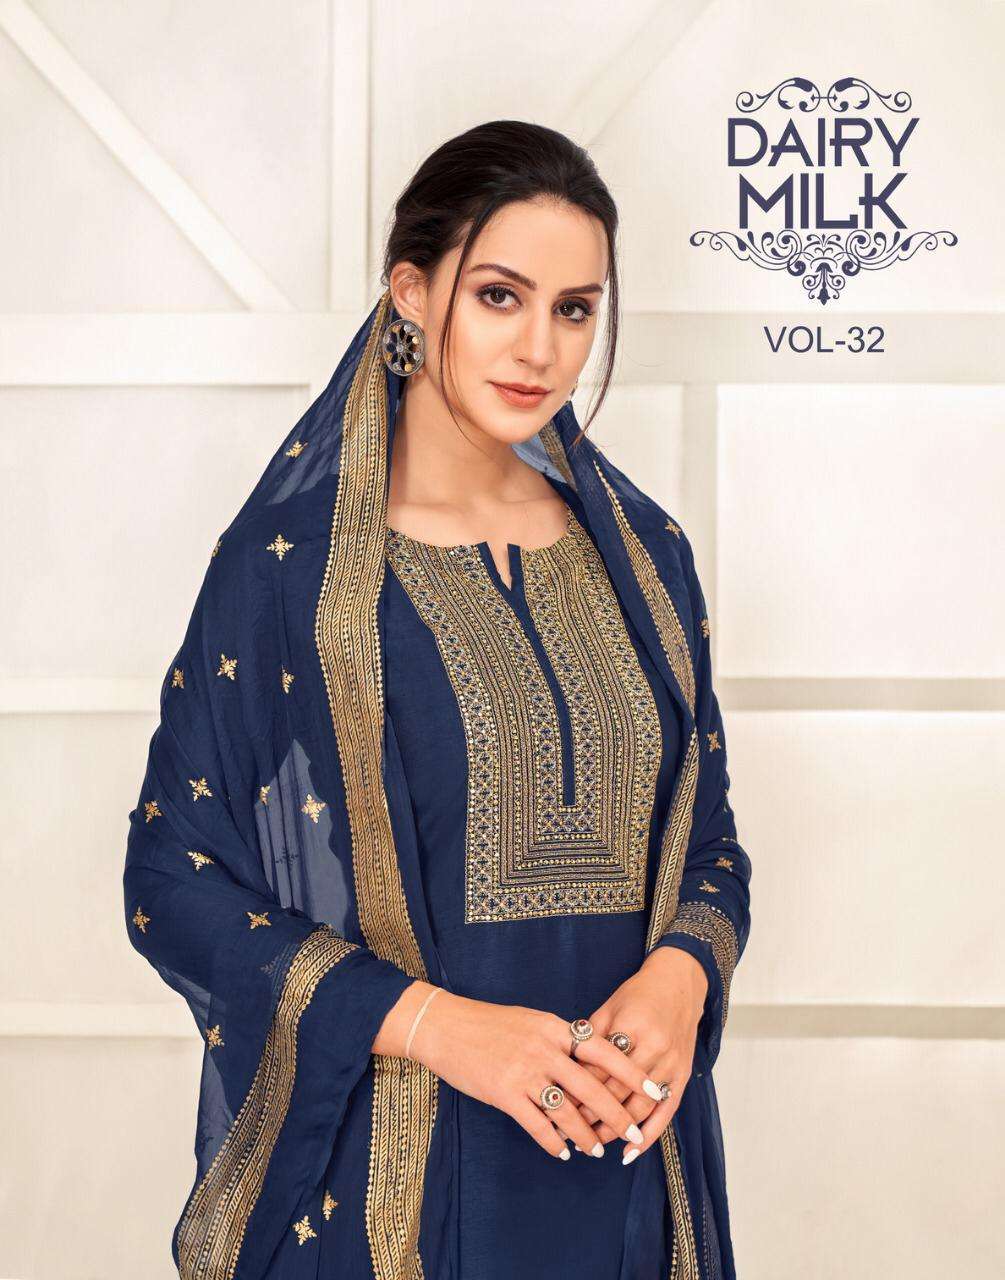 angroop plus dairy milk low range silk based causal wear dress material in wholesale price in surat saidharanx